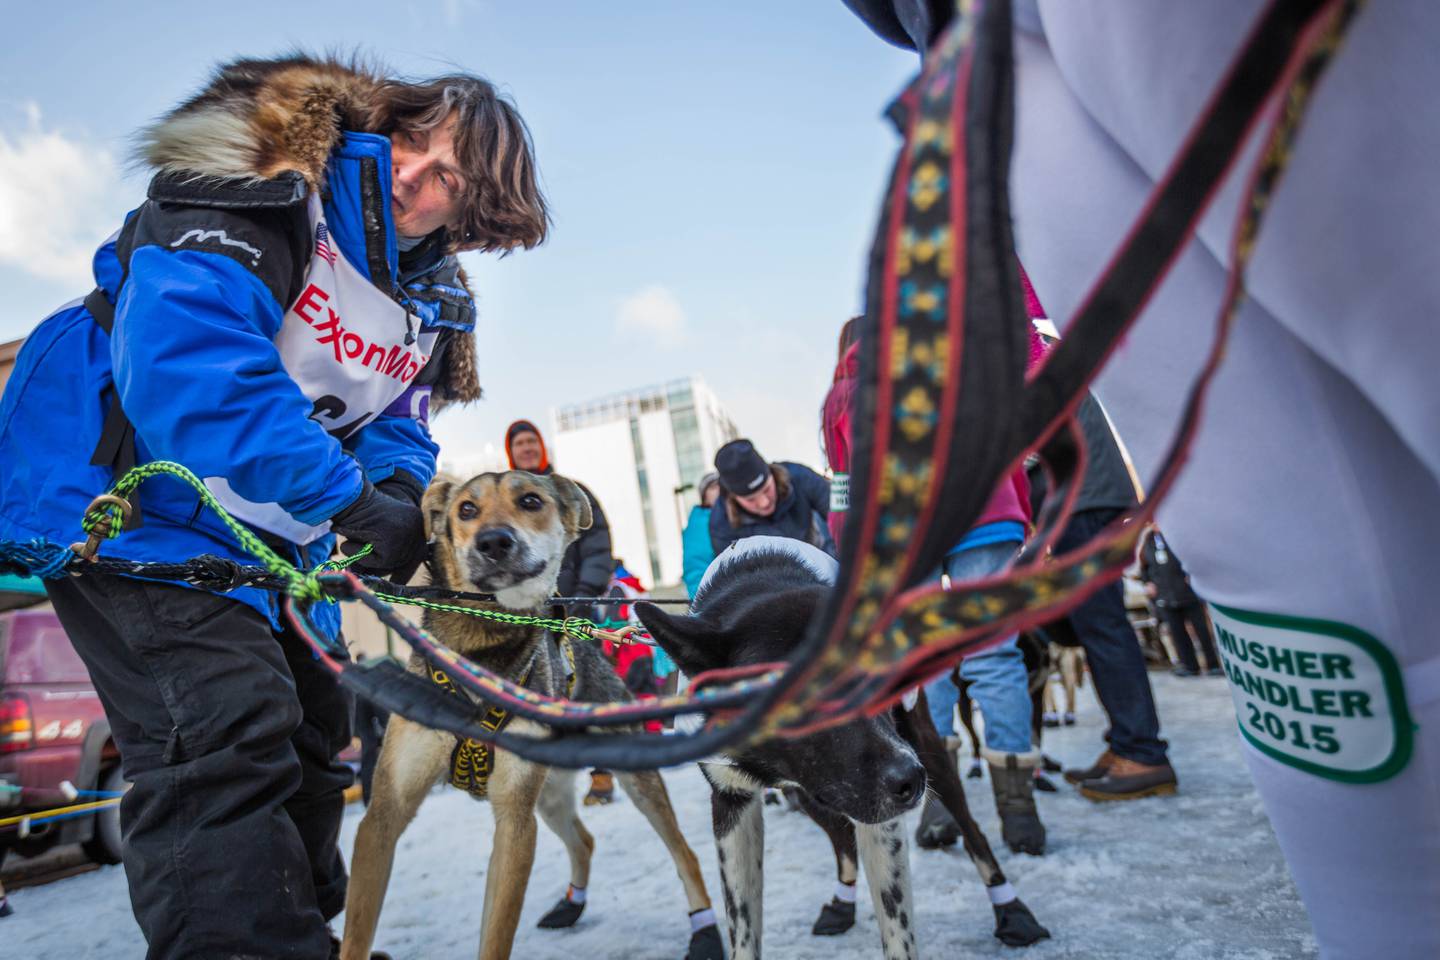 LH 2015 Iditarod Ceremonial Start 20 - 20150307.jpg-1425776204